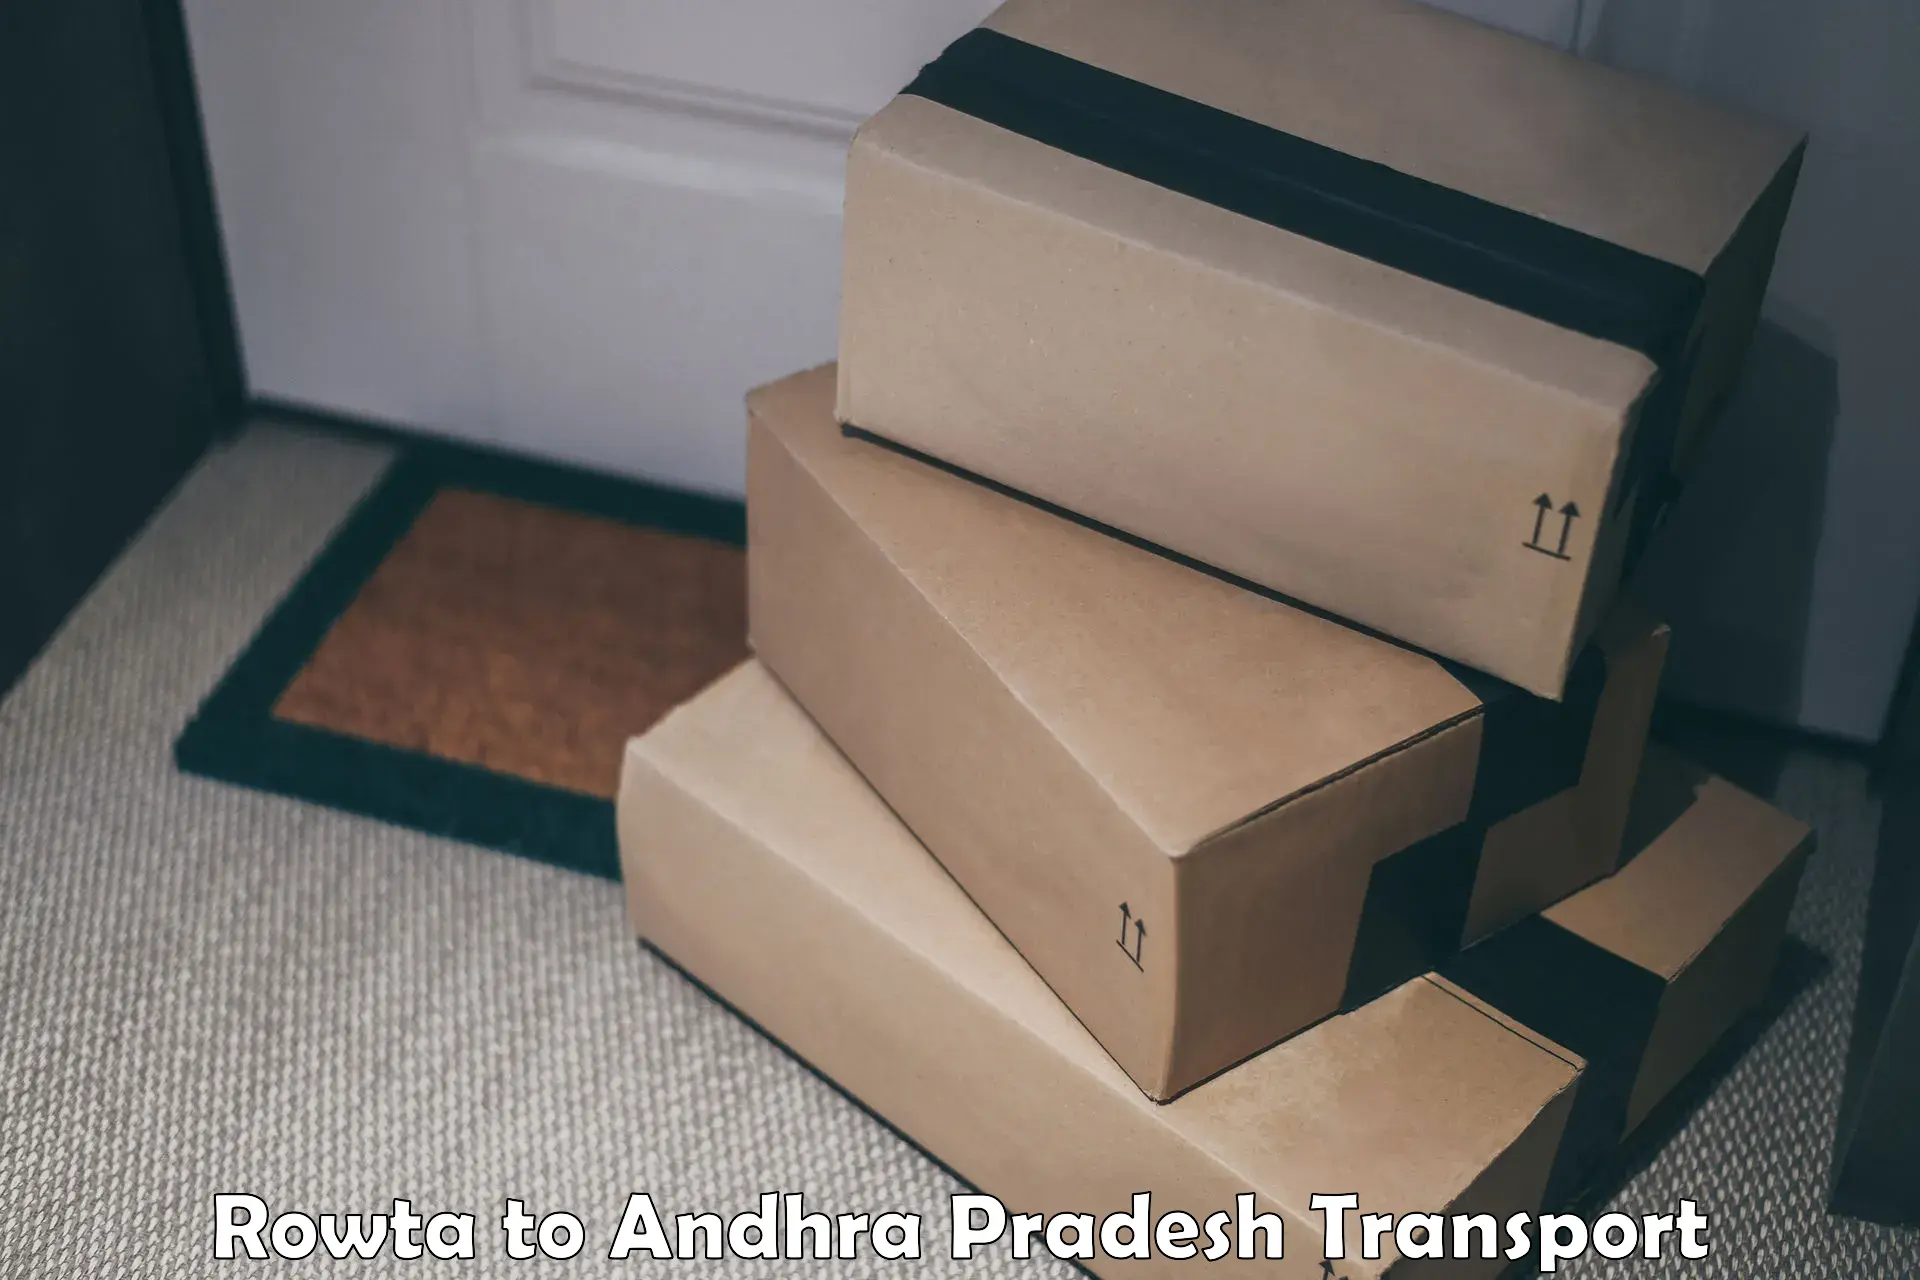 Delivery service Rowta to Andhra Pradesh